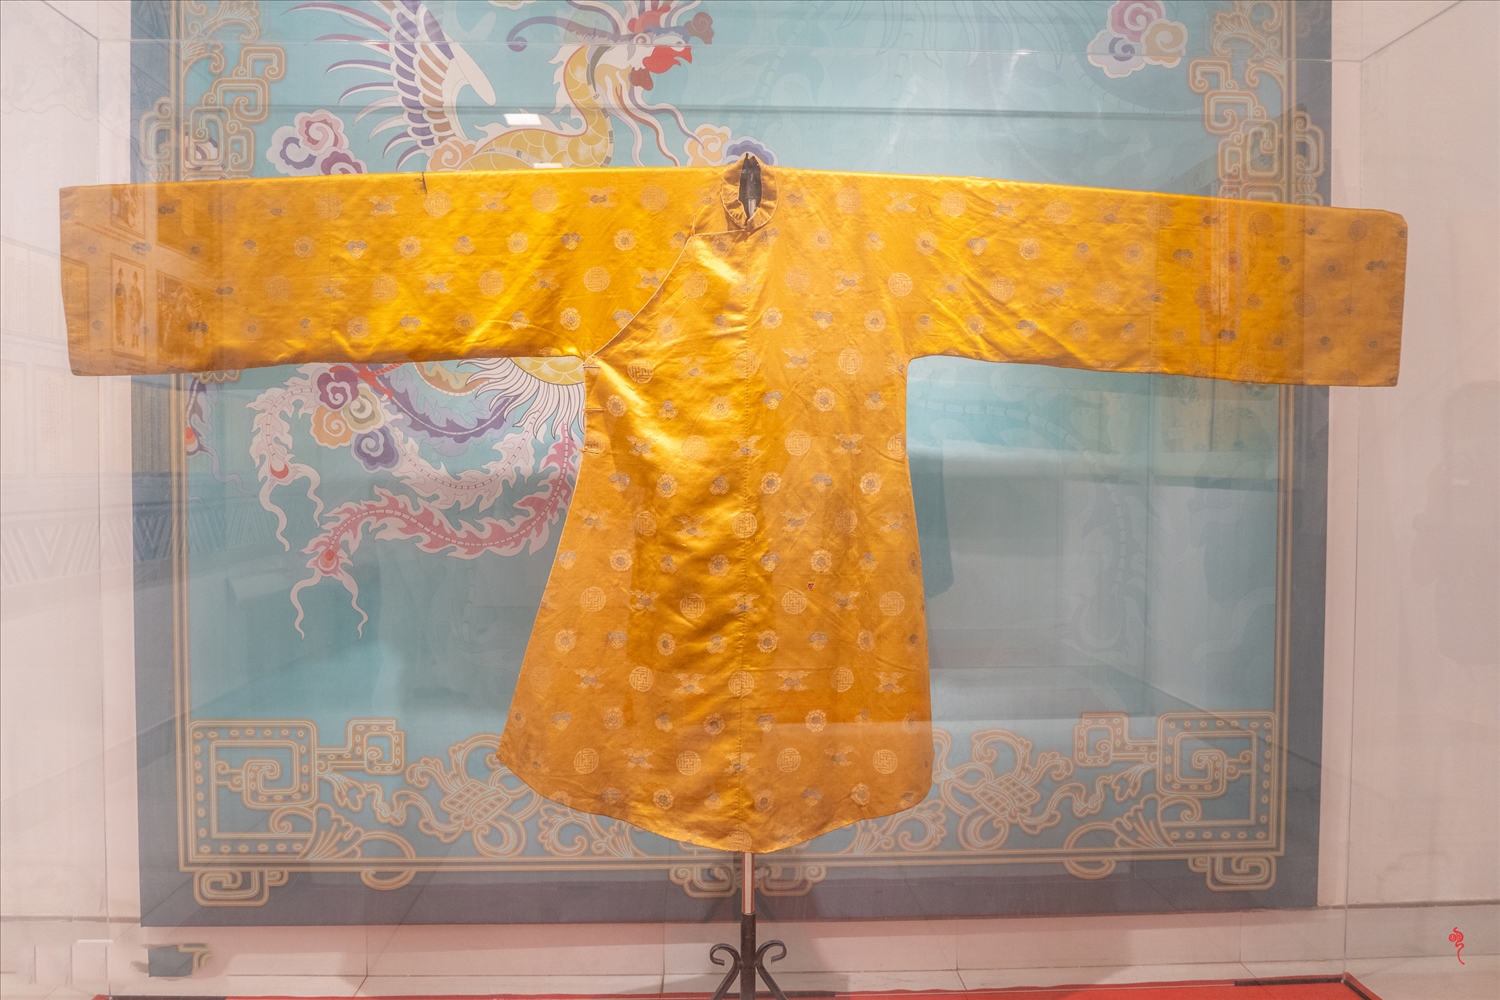 Bộ lễ phục của Hoàng thái hậu triều Nguyễn vào cuối thế kỷ 19 đầu thế kỷ 20